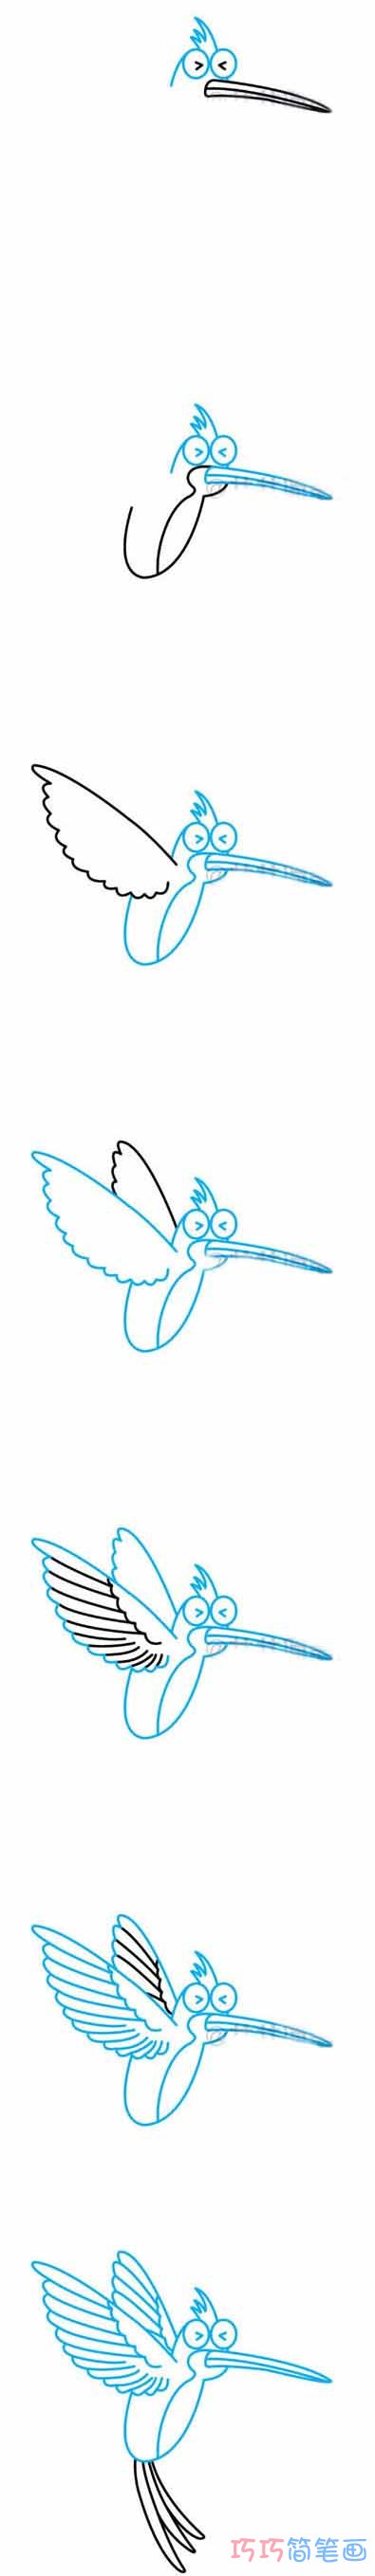 蜂鸟怎么画可爱简洁_带步骤图蜂鸟简笔画图片